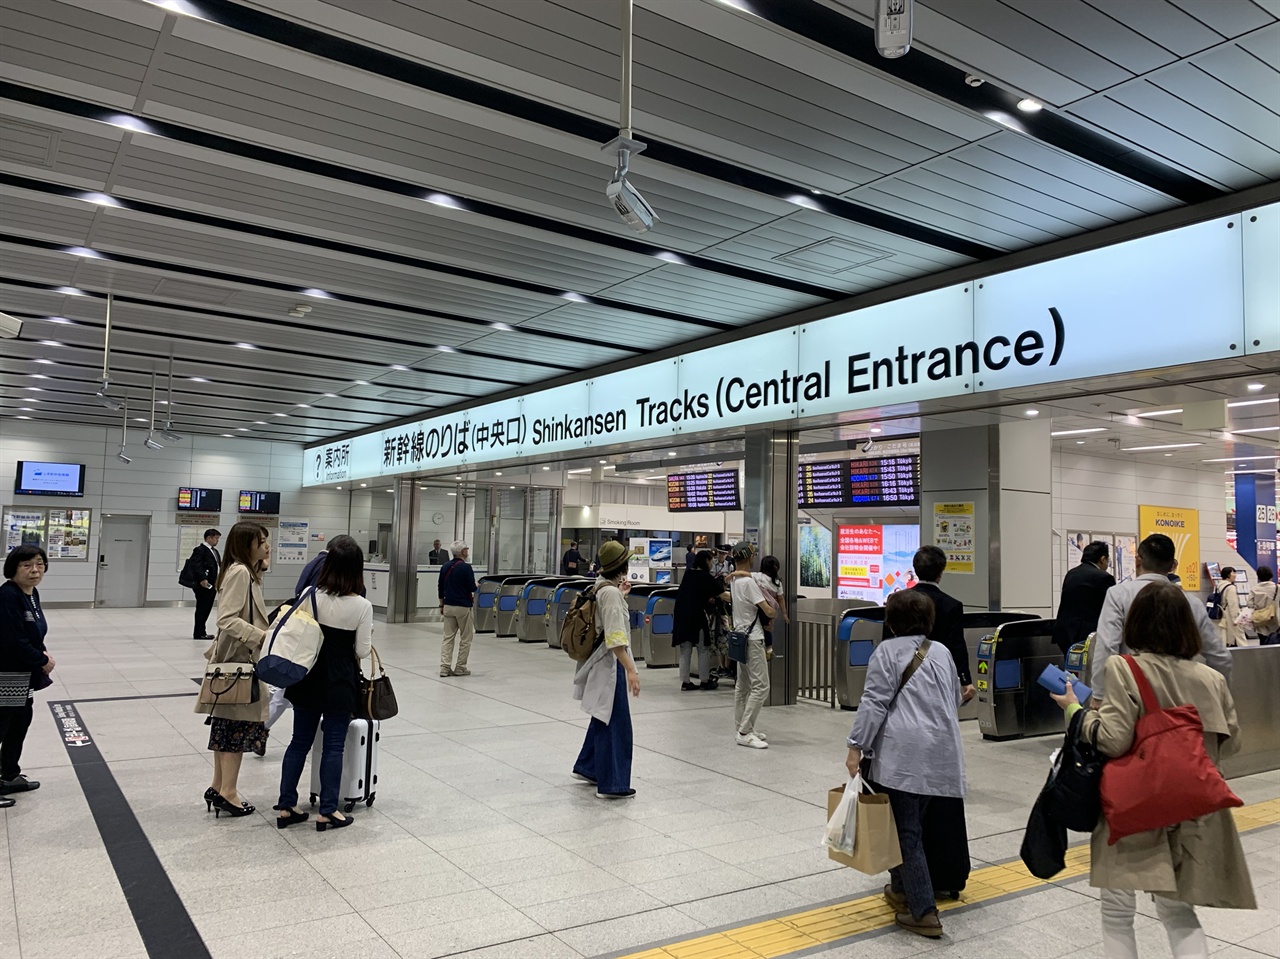  구라시키로 가기 위해 먼저 신오사카 역에서 오카야마로 가는 신칸센을 타야 한다.